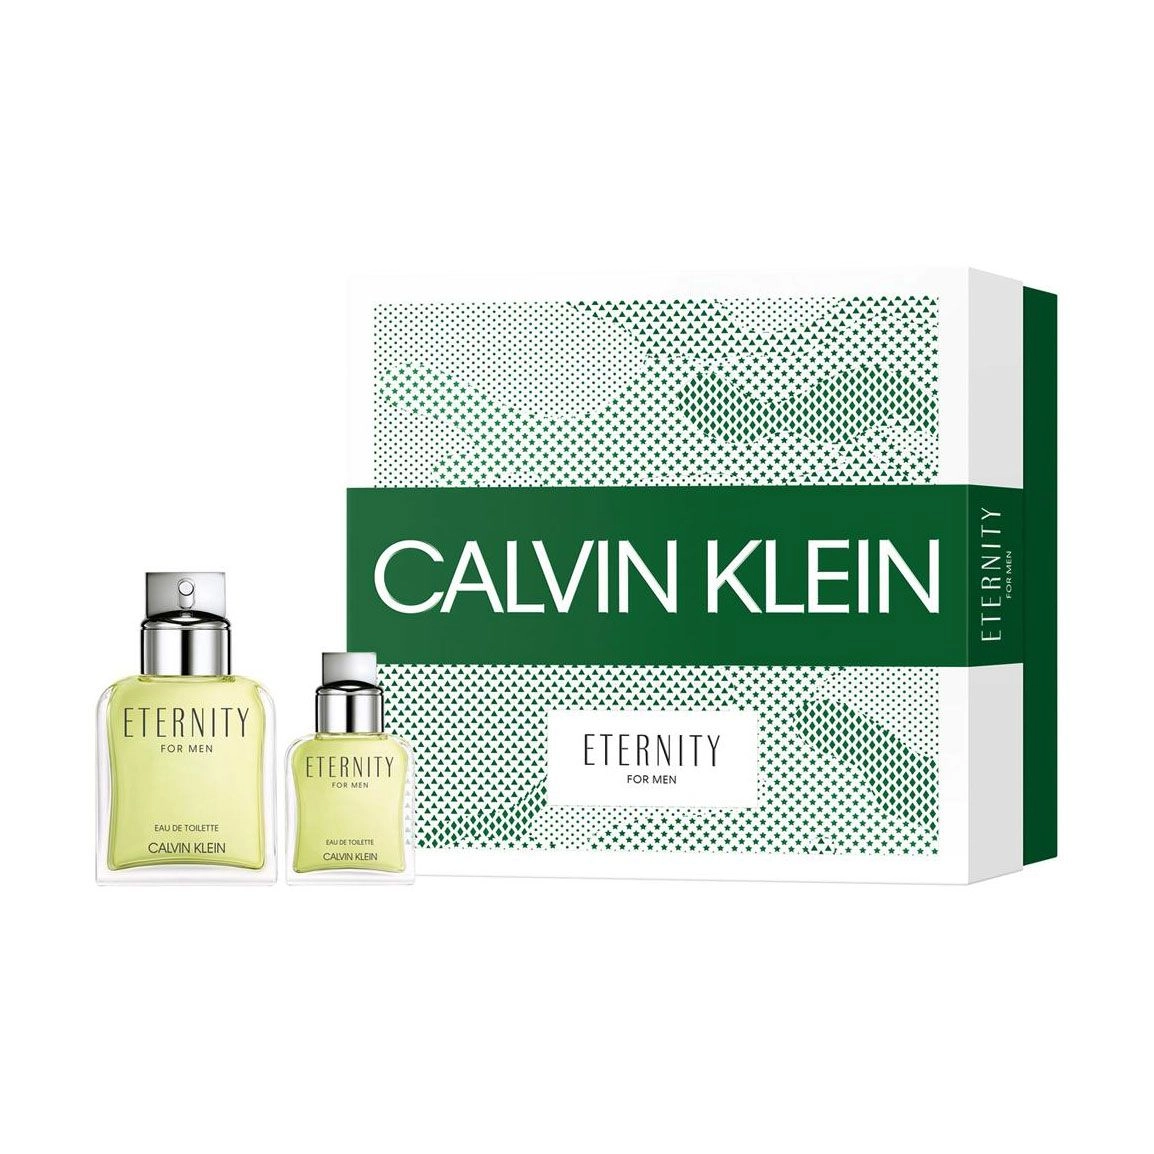 Calvin Klein Парфюмированный набор мужской Eternity For Men (туалетная вода, 100 мл + туалетная вода, 30 мл) - фото N1